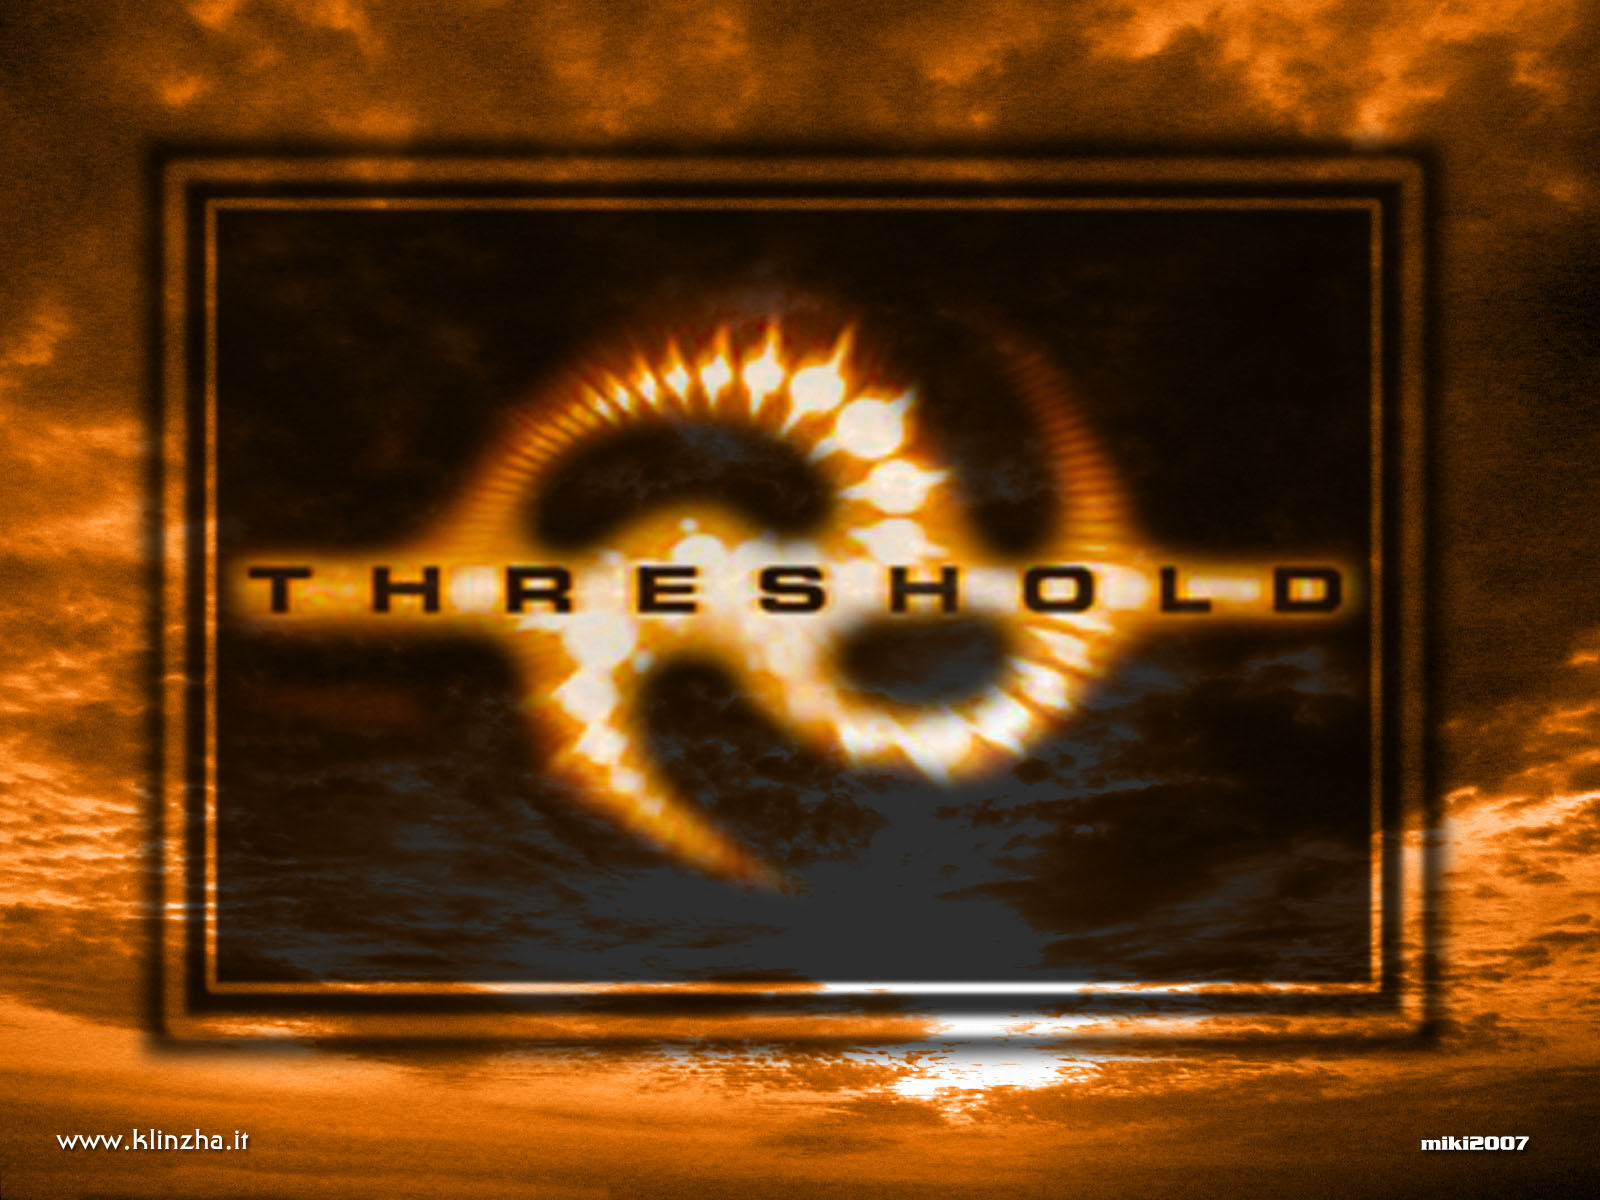 หลุด! ชื่อ Threshold ระบบปฏิบัติการณ์รุ่นใหม่จาก Microsoft